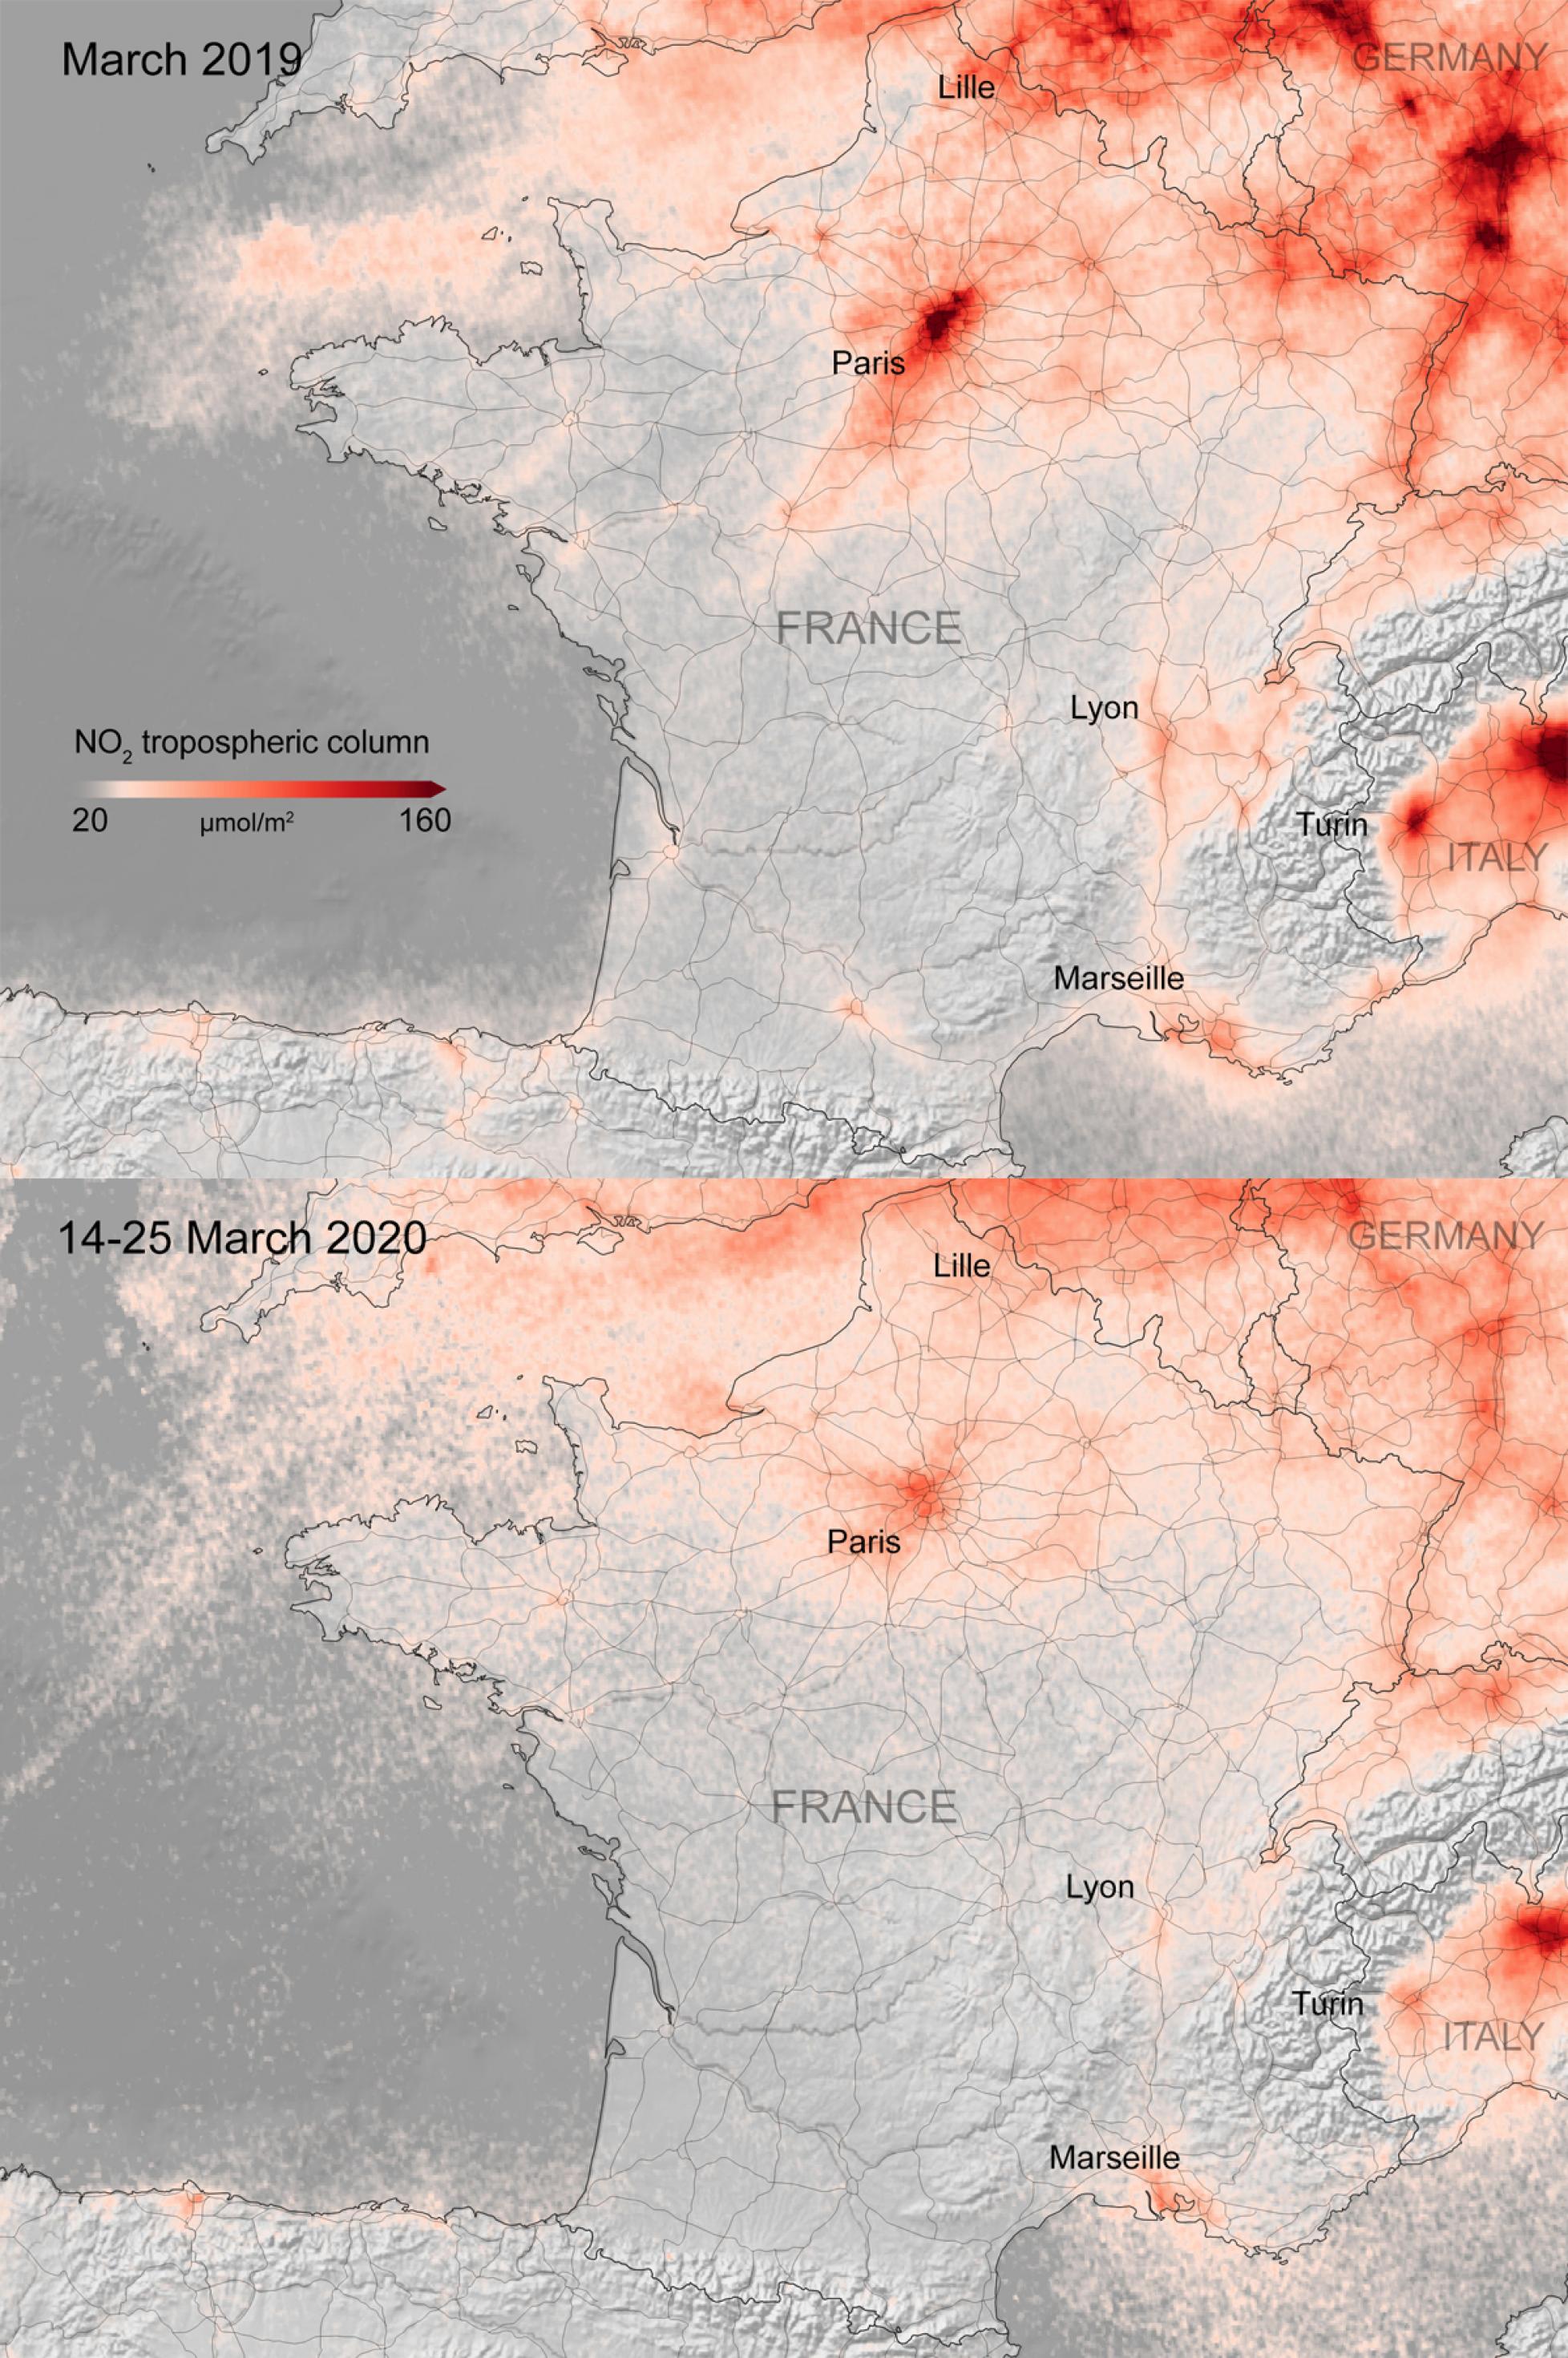 Eine Karte von Frankreich, oben für März 2019, unten für März 2020. In Rot sind Messwerte für den Luftschadstoff NO2 eingezeichnet – je intensiver die Farbe, desto höher die Belastung. Es ist deutlich zu erkennen, dass Nordfrankreich und Paris, aber auch Frankfurt und Ludwigshafen, die rechts oben im Kartenausschnitt liegen, dieses Jahr wegen des Lockdowns viel weniger Schadstoffe in der Luft haben als im vorigen.